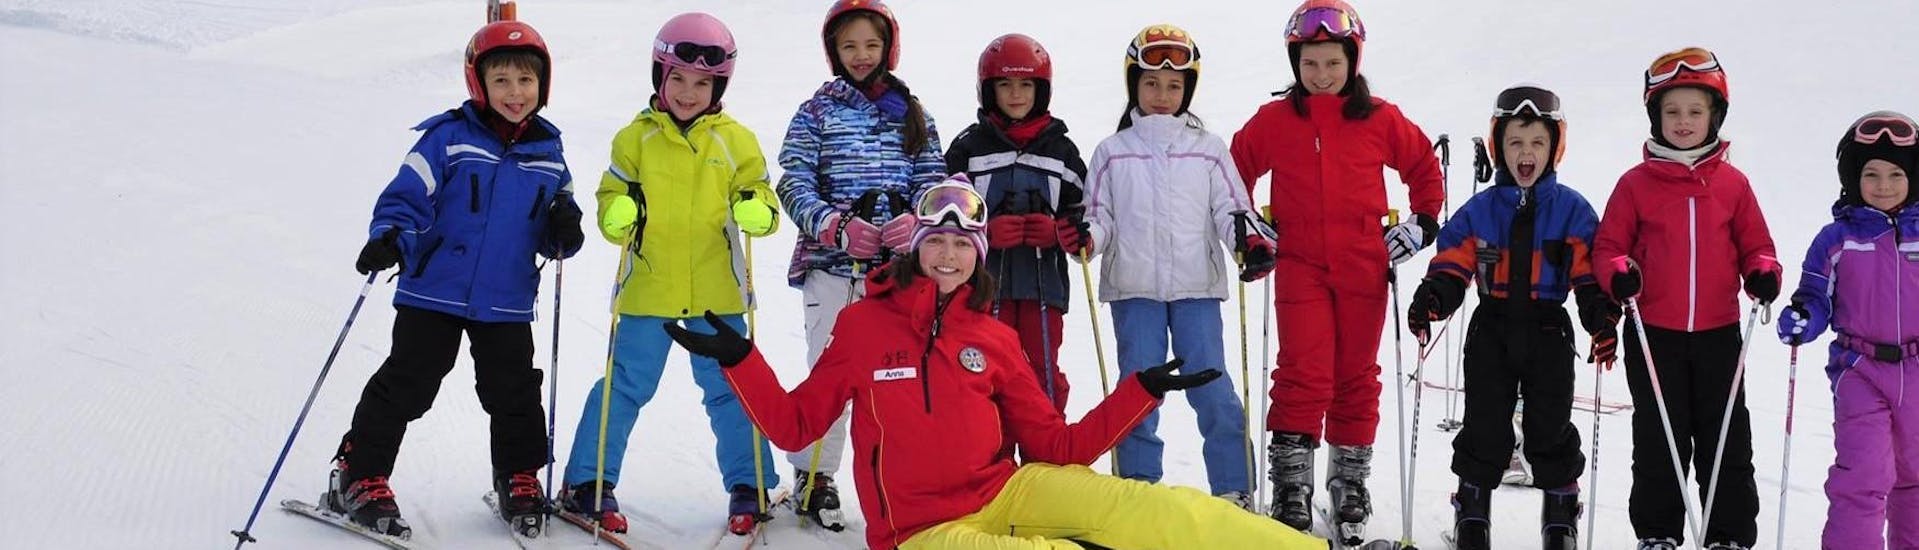 Kinder-Skikurs ab 4 Jahren für alle Levels.